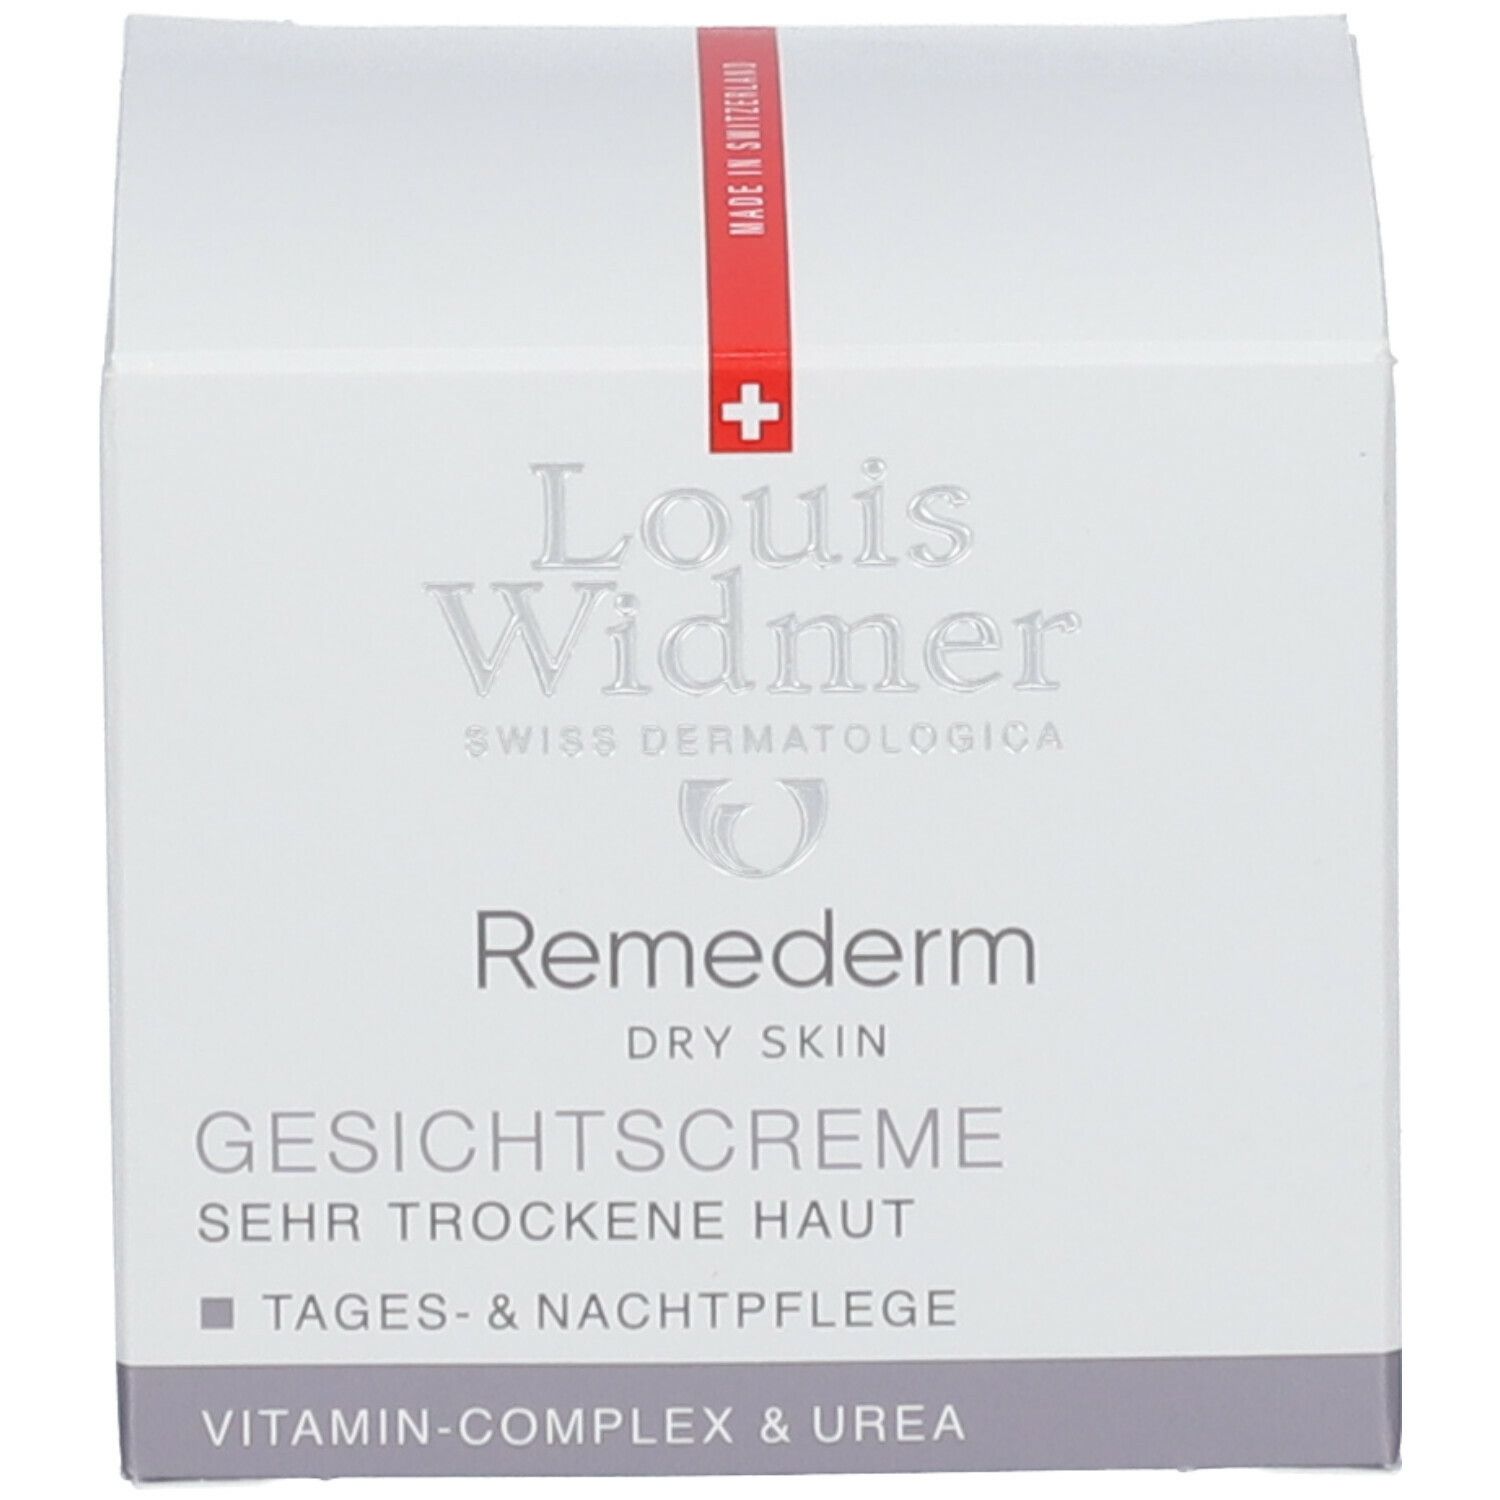 Louis Widmer Remederm Gesichtscreme leicht parfümiert